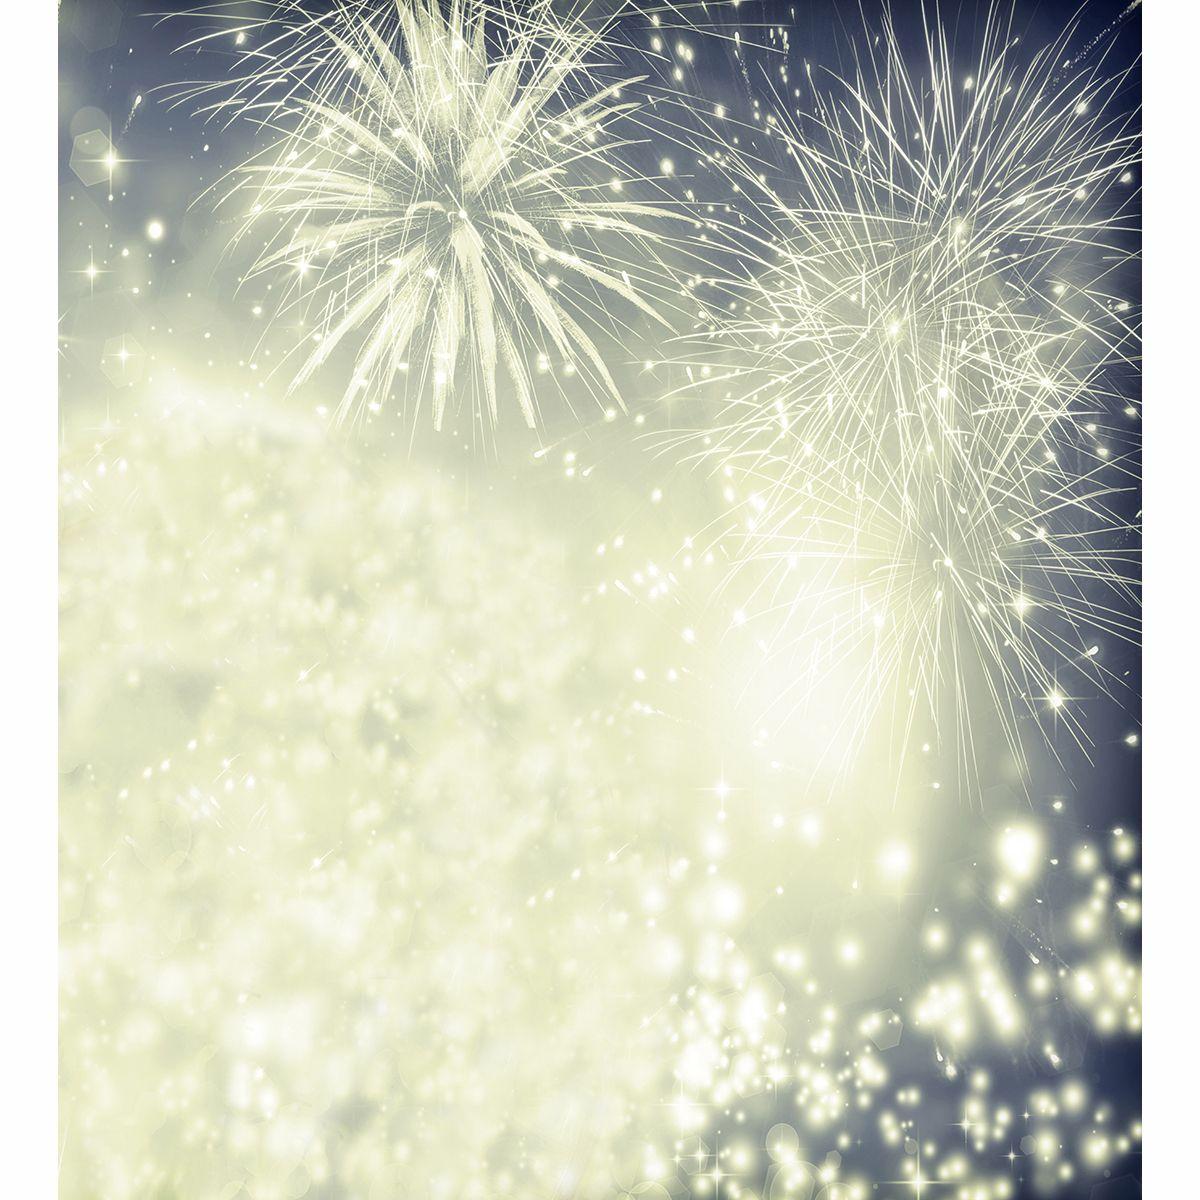 Allenjoy vinyl photography backdrop New Year's fireworks